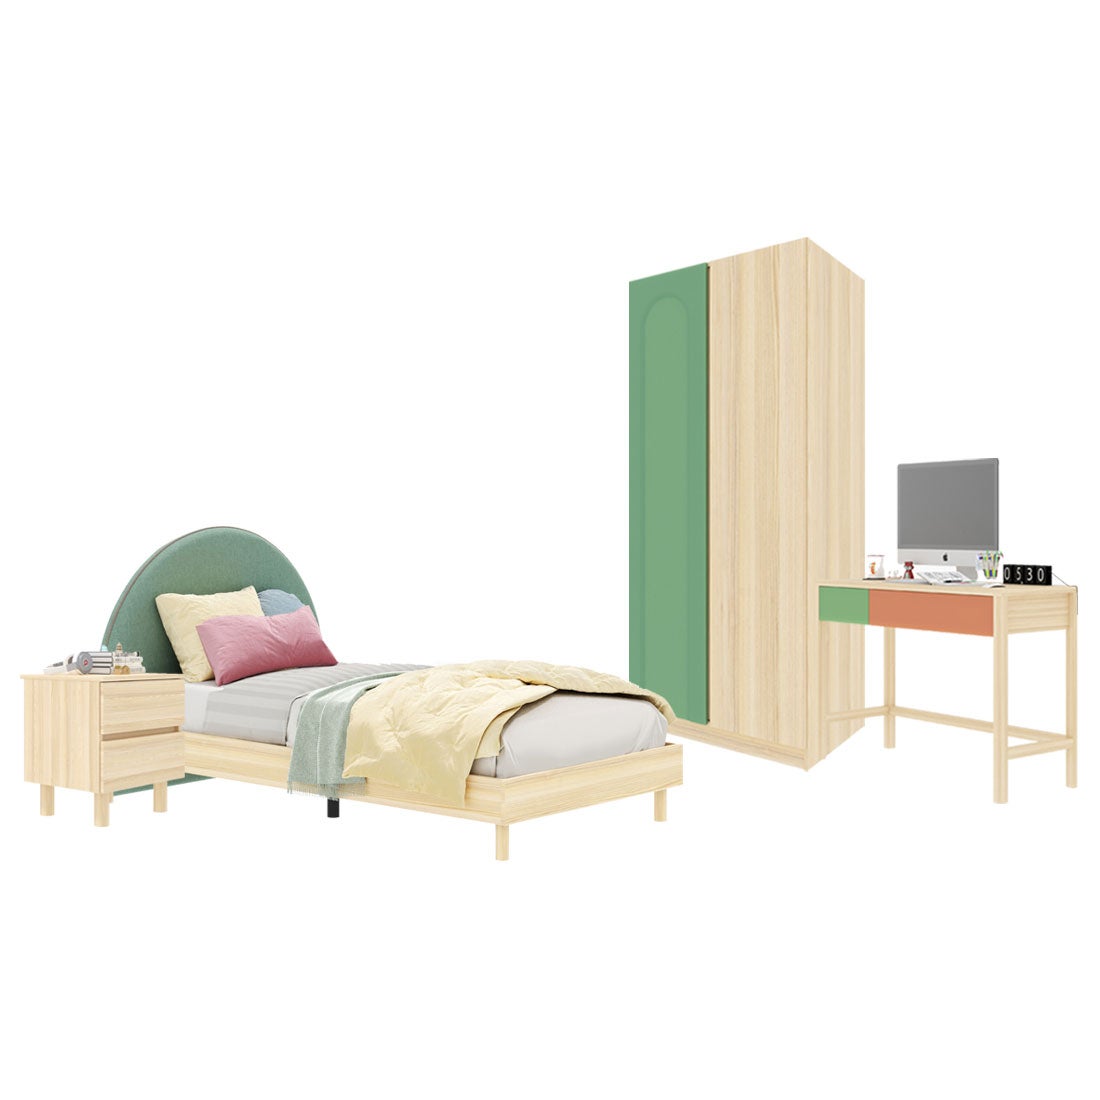 ชุดห้องนอน ขนาด 3.5 ฟุต-เบาะเขียว รุ่น Bingsoo & ตู้เสื้อผ้า 90 ซม. พร้อมตู้ข้างเตียง สีเขียว01